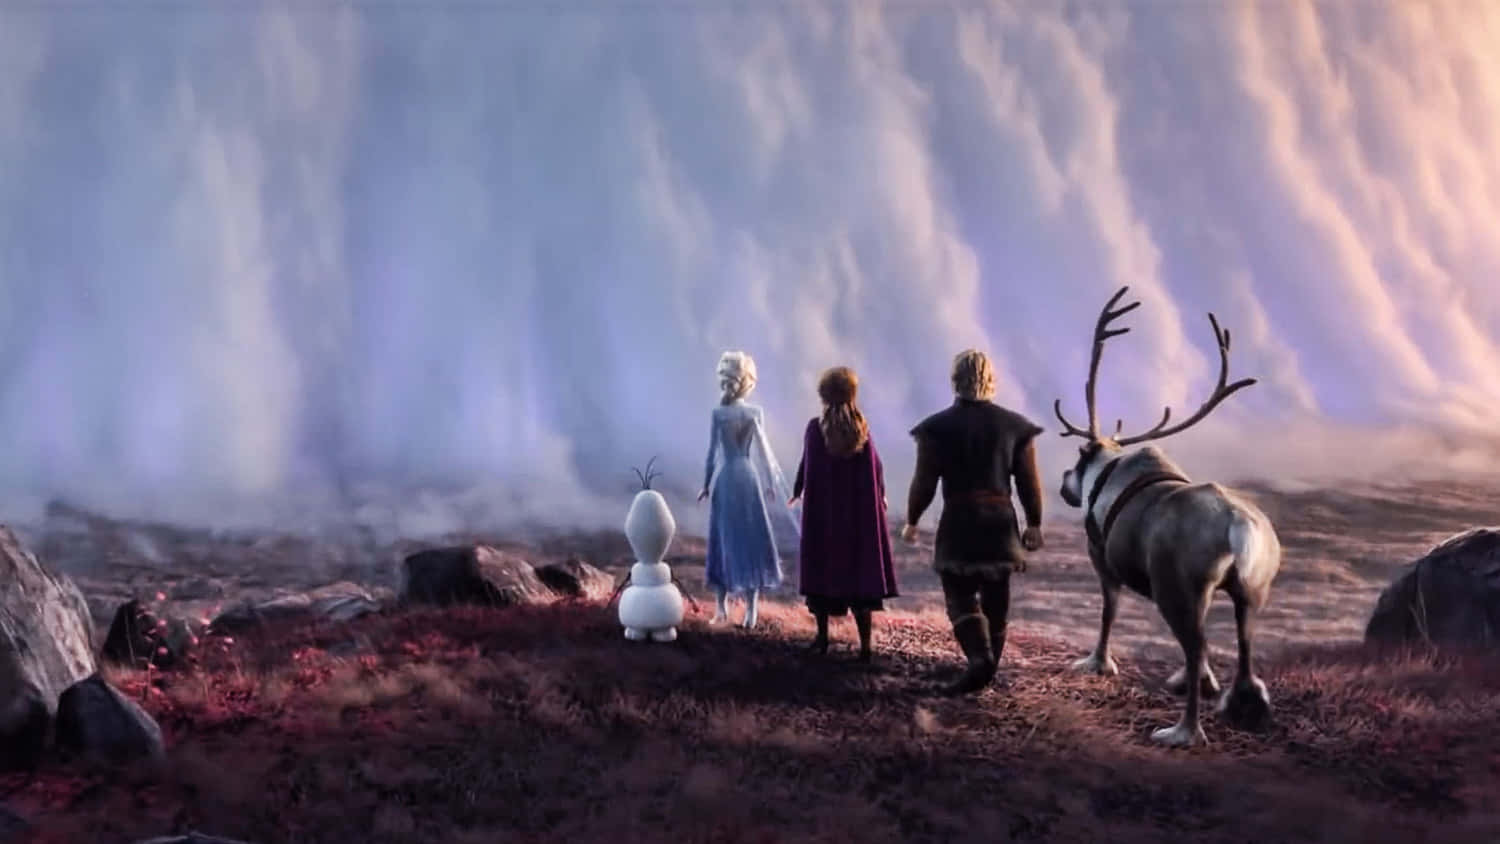 Personajesde Frozen Enfrentando Una Imagen De Nieve Y Hielo.